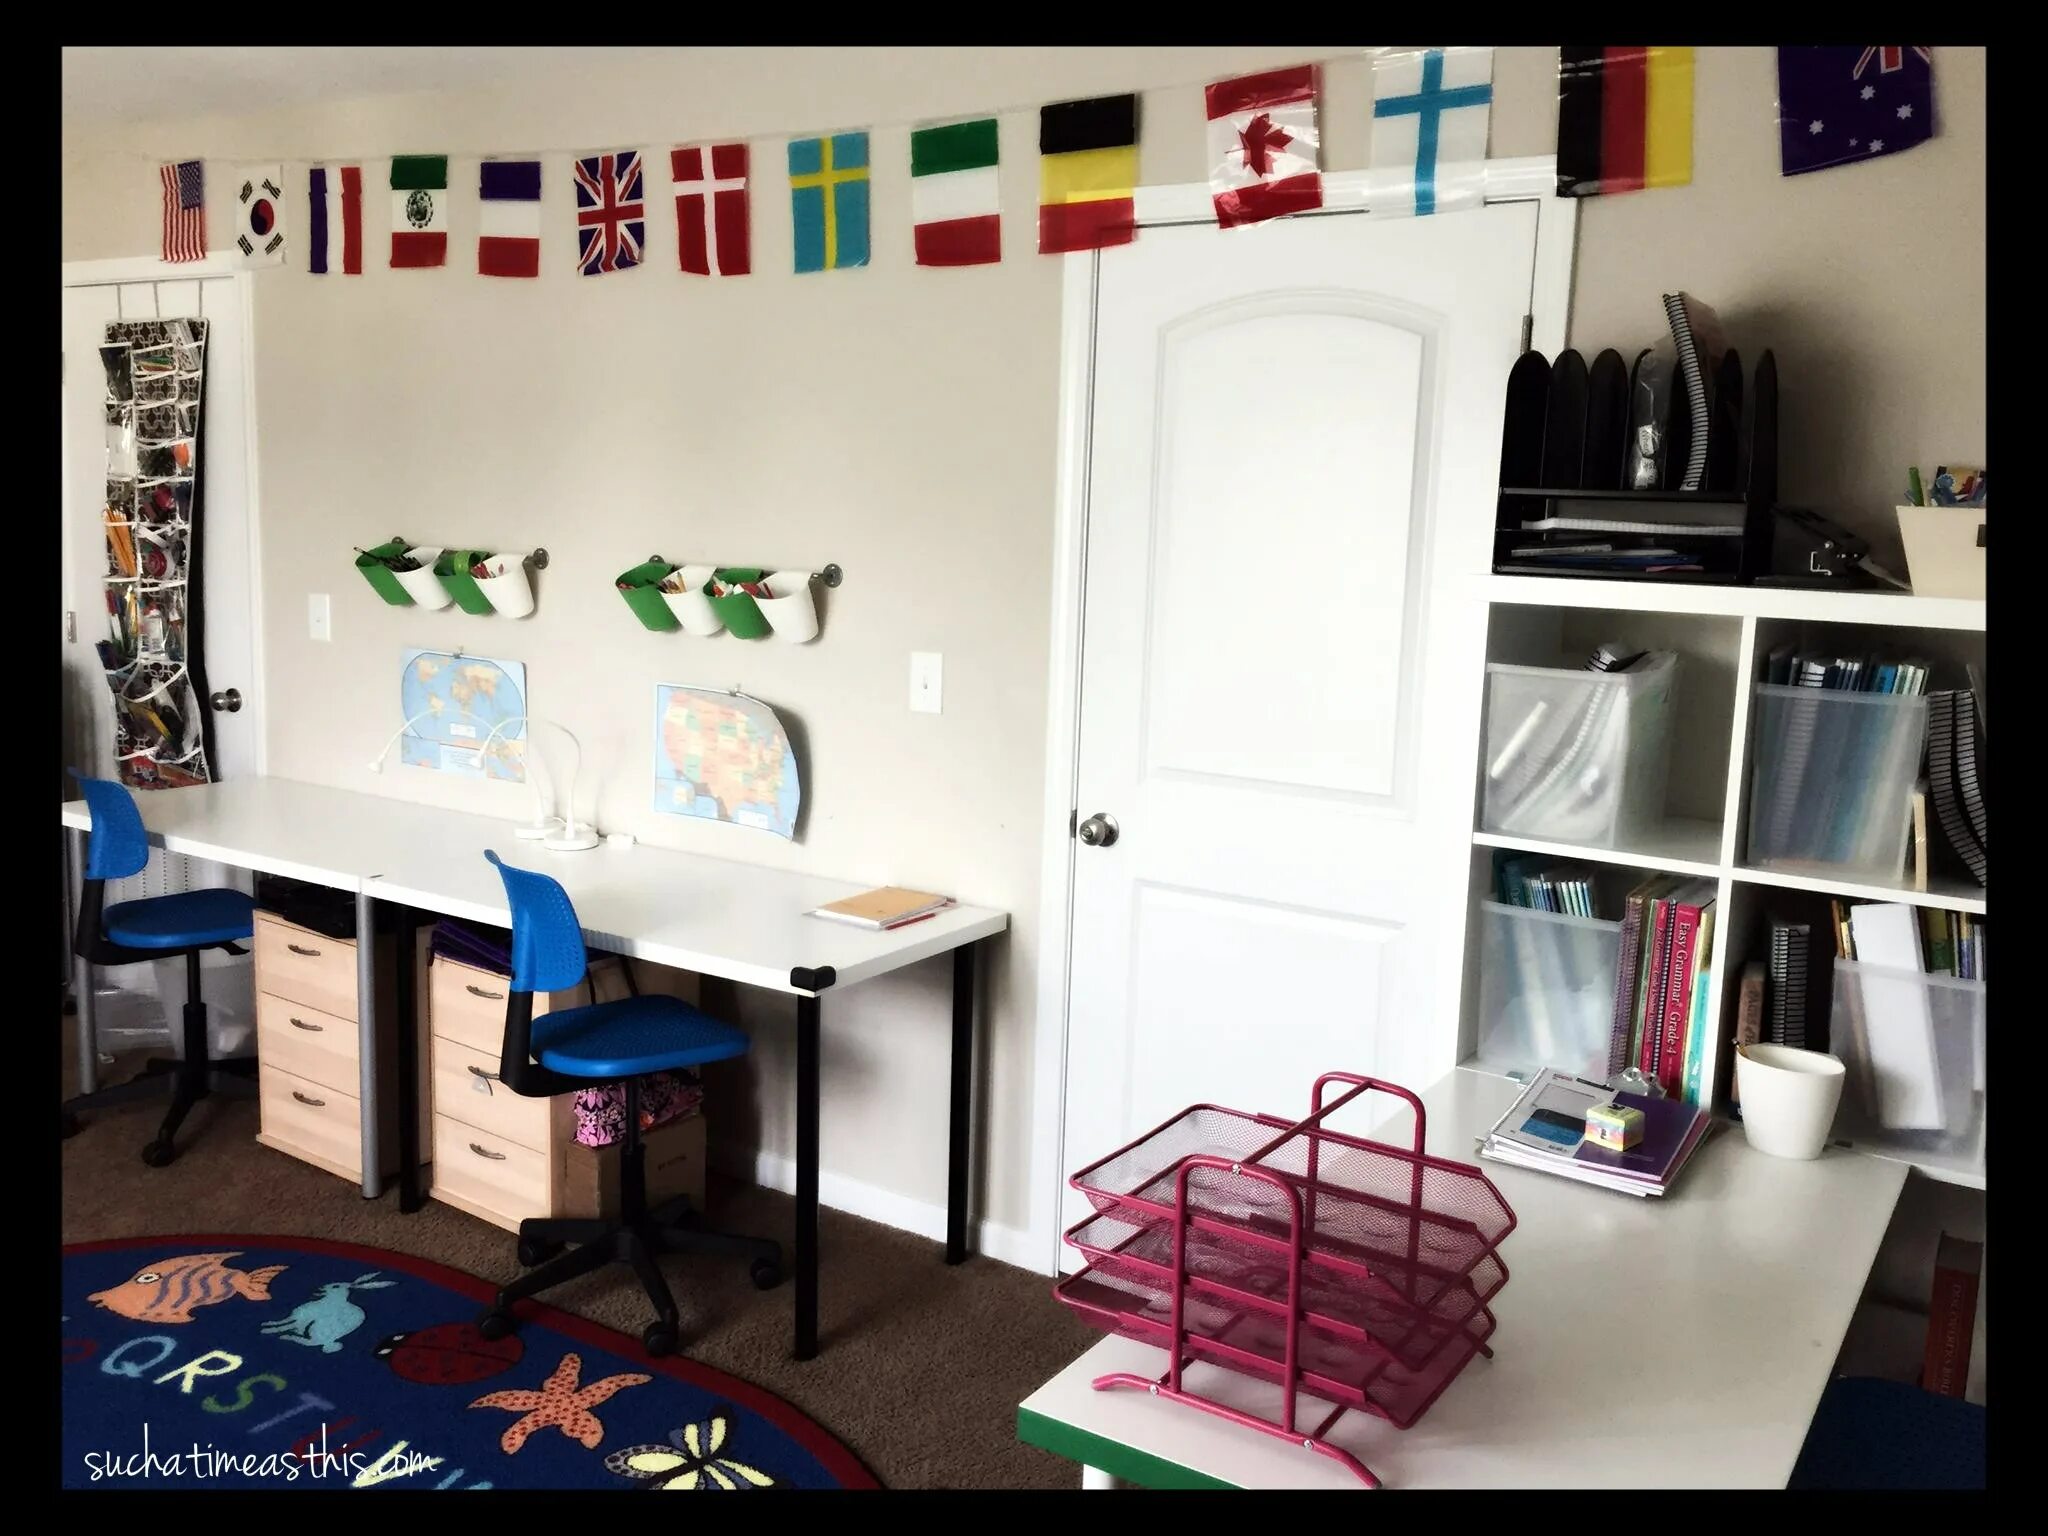 78 детская. Икеятека дизайн квартиры. Homeschooling организация места. Homeschool Room Desk. Подписные в квартире для детей.